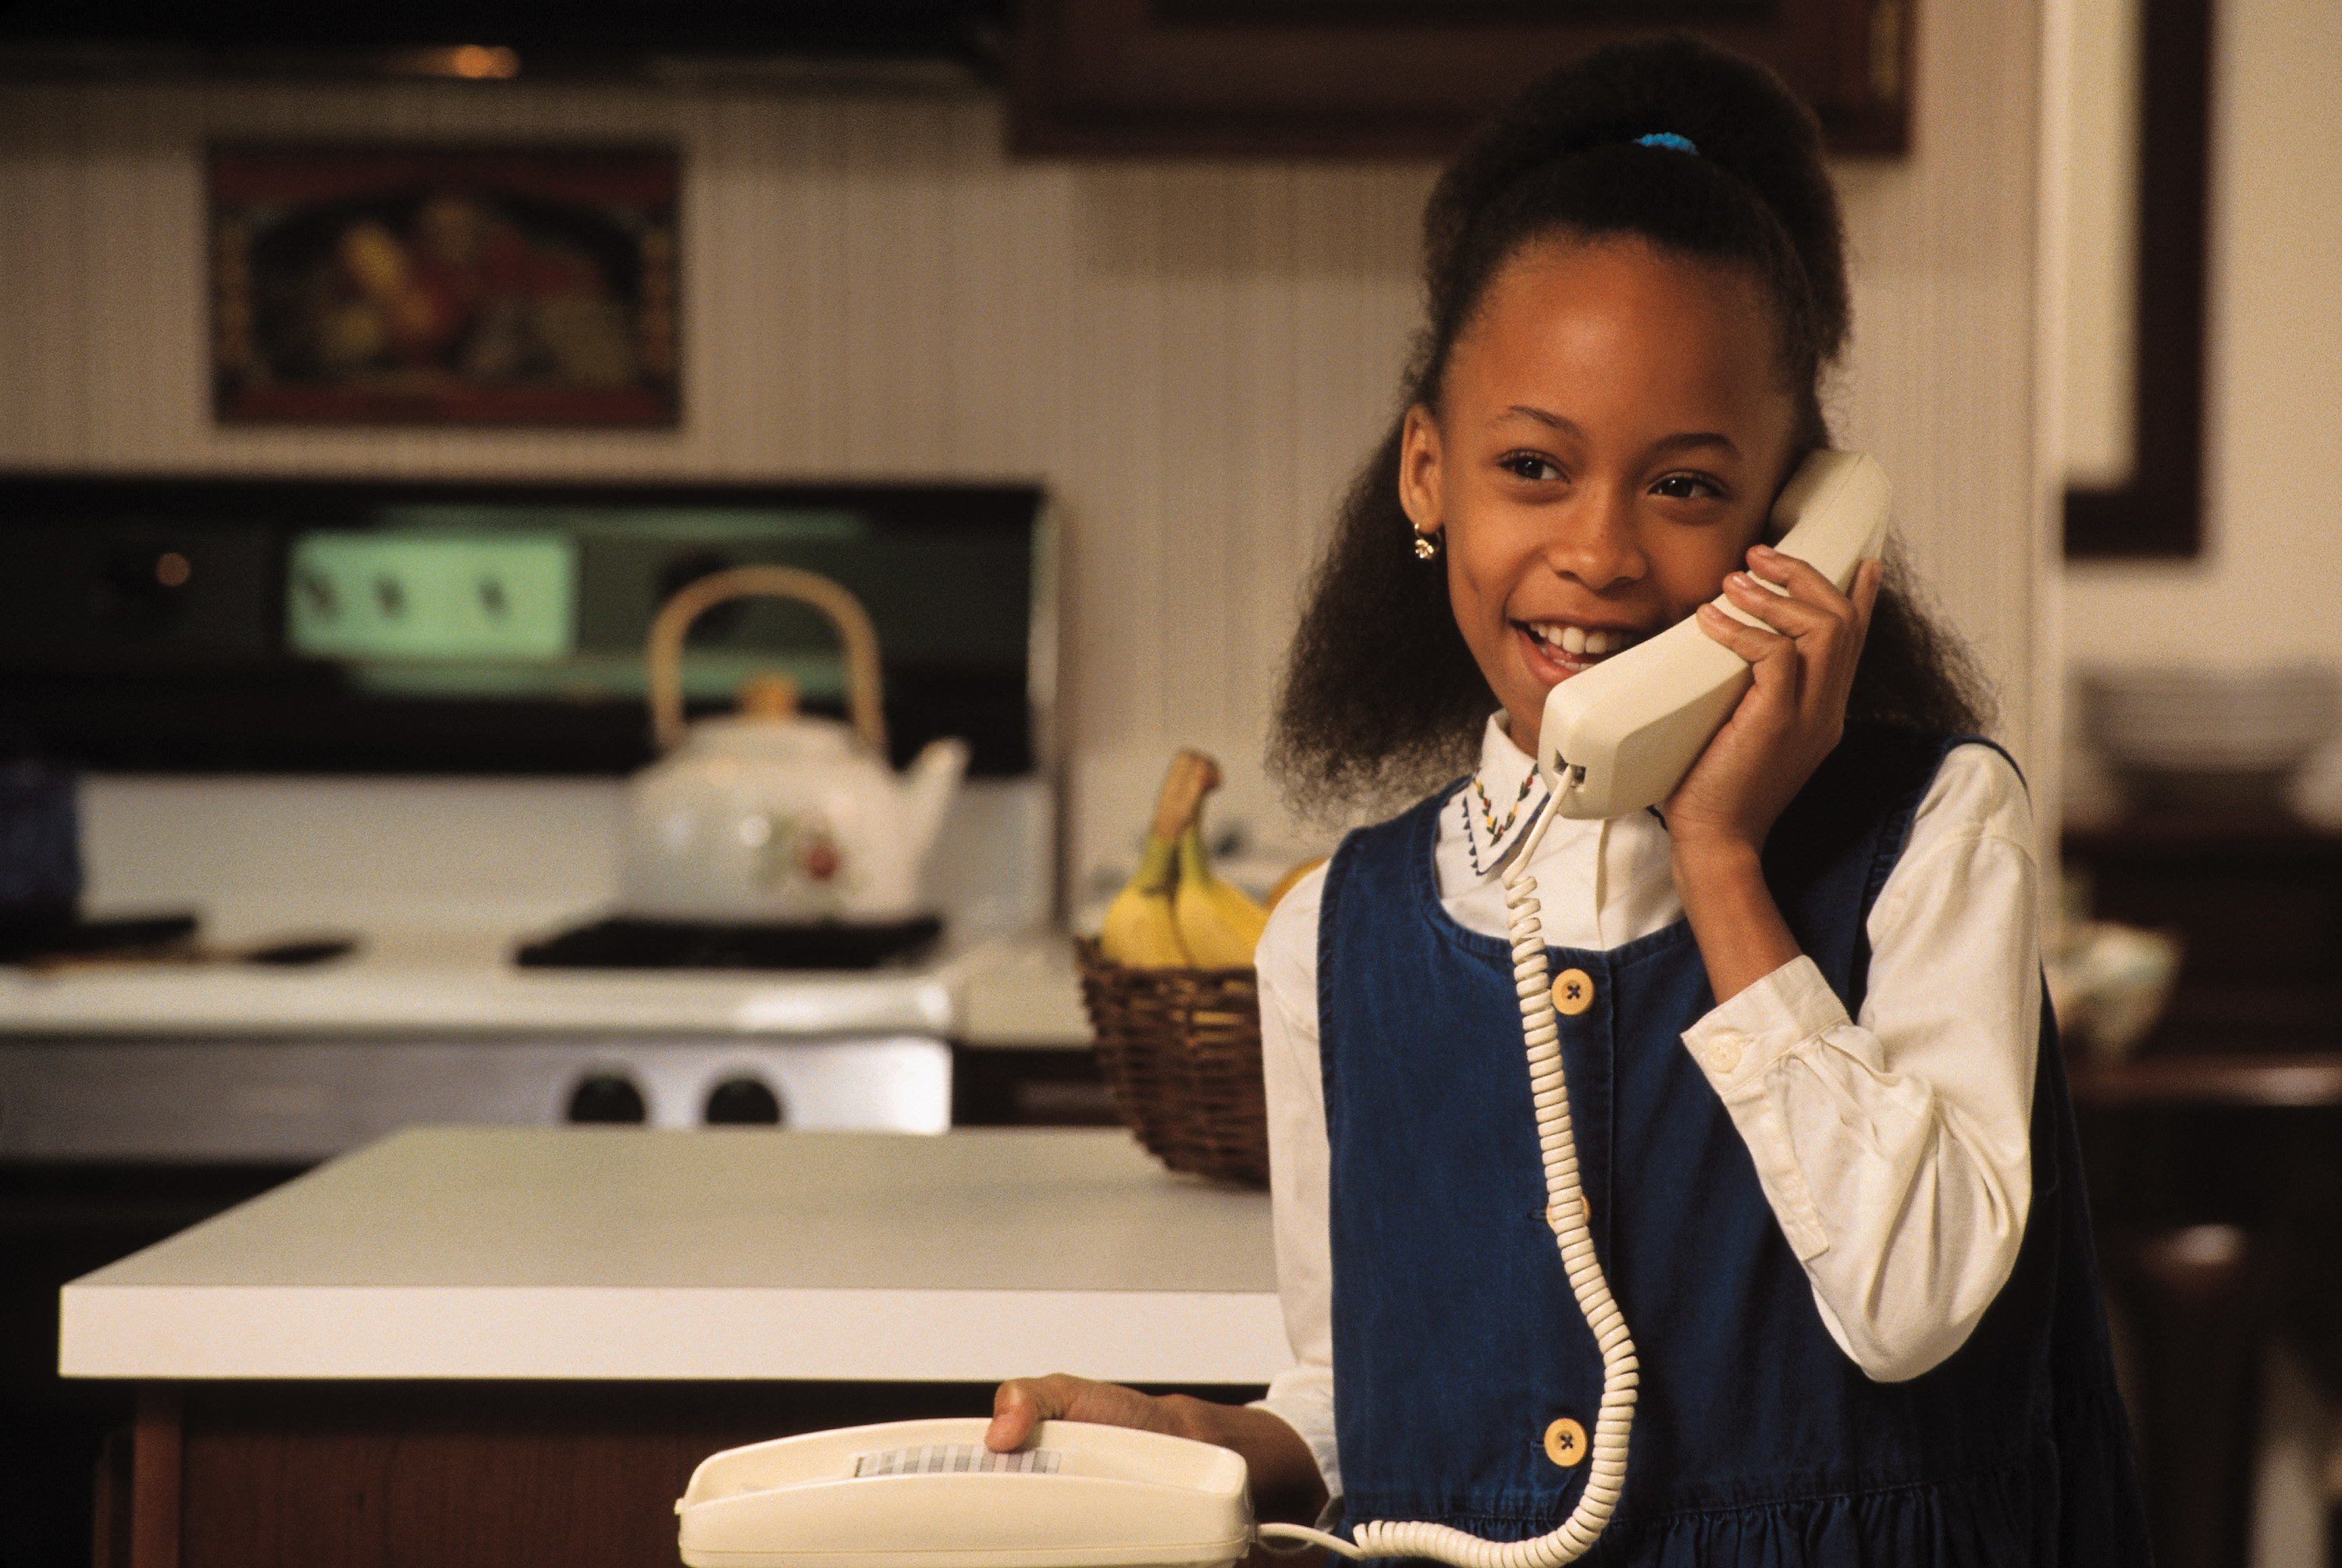 Little girl talking on kitchen phone